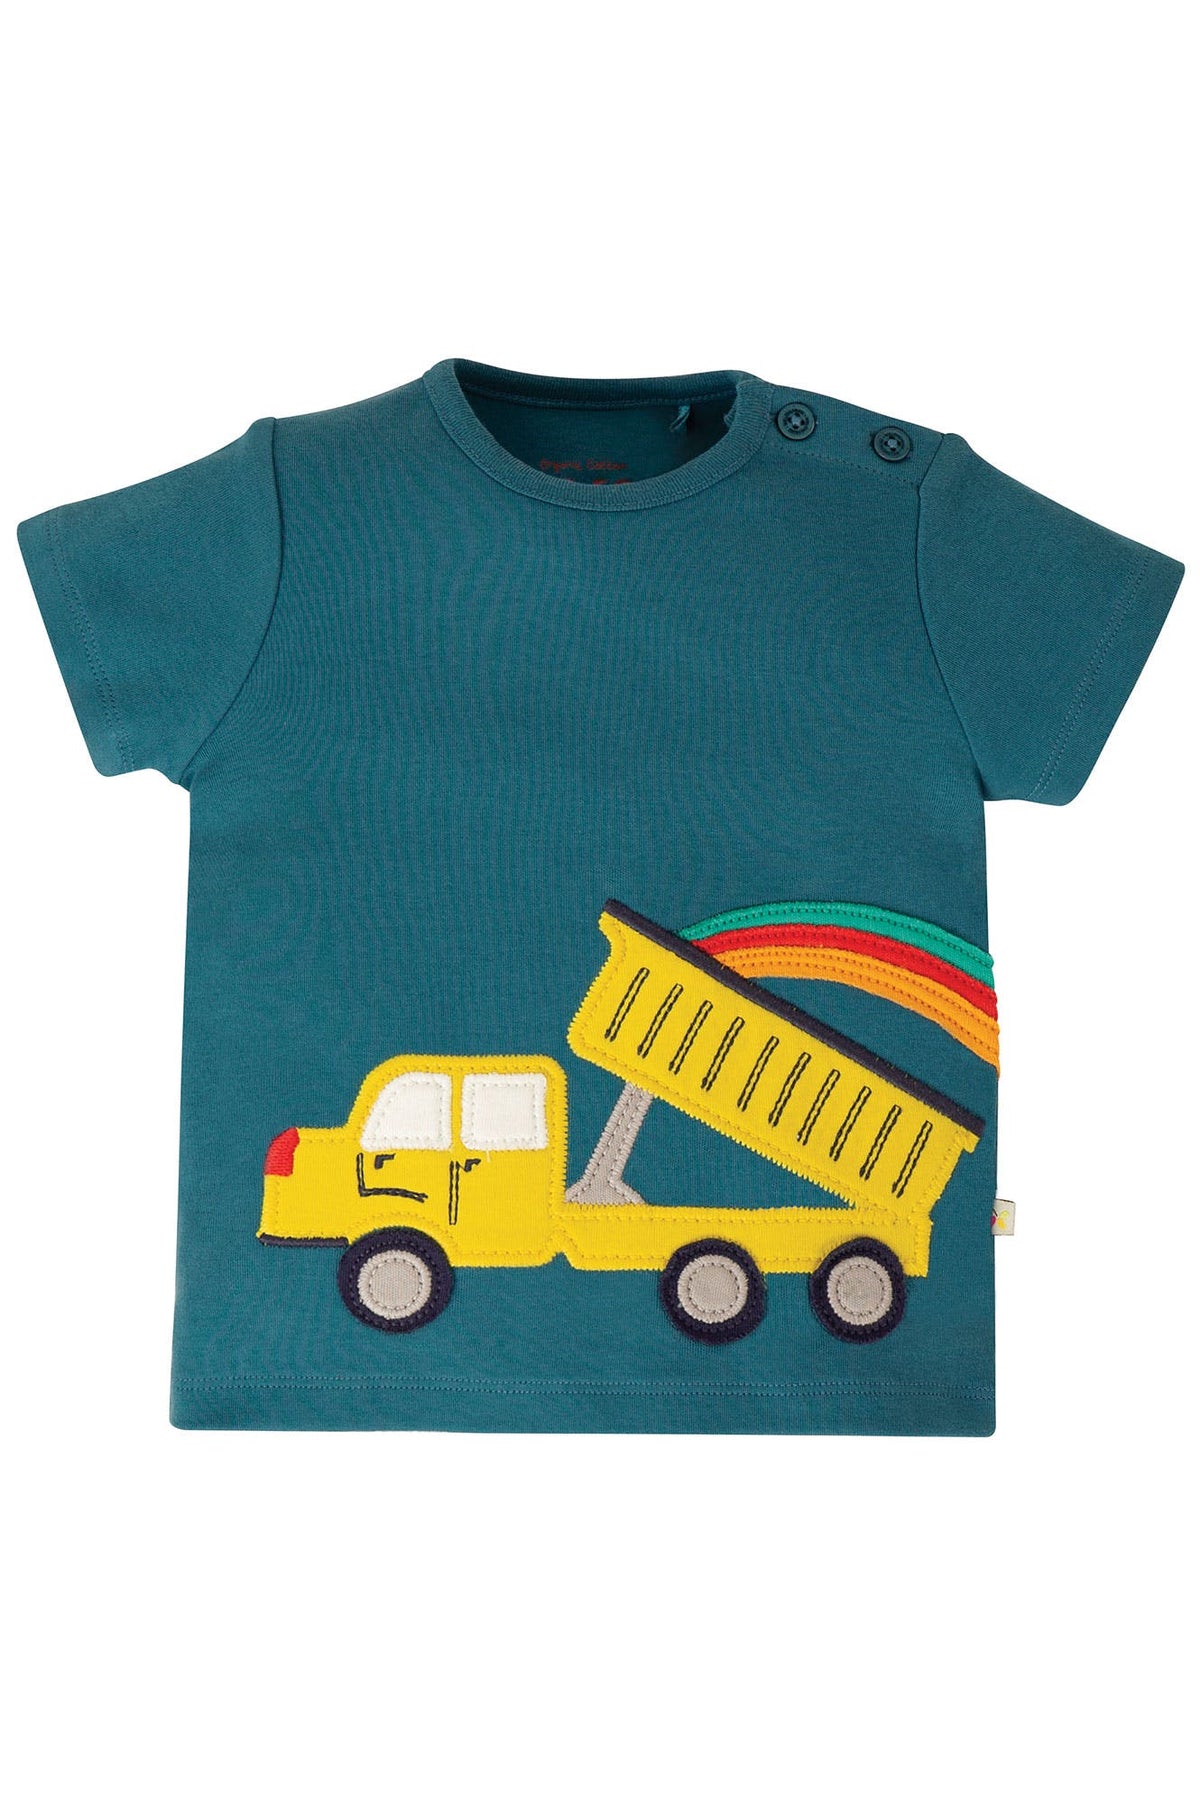 T-Shirt Truck ( 0-3  Monate) von Frugi